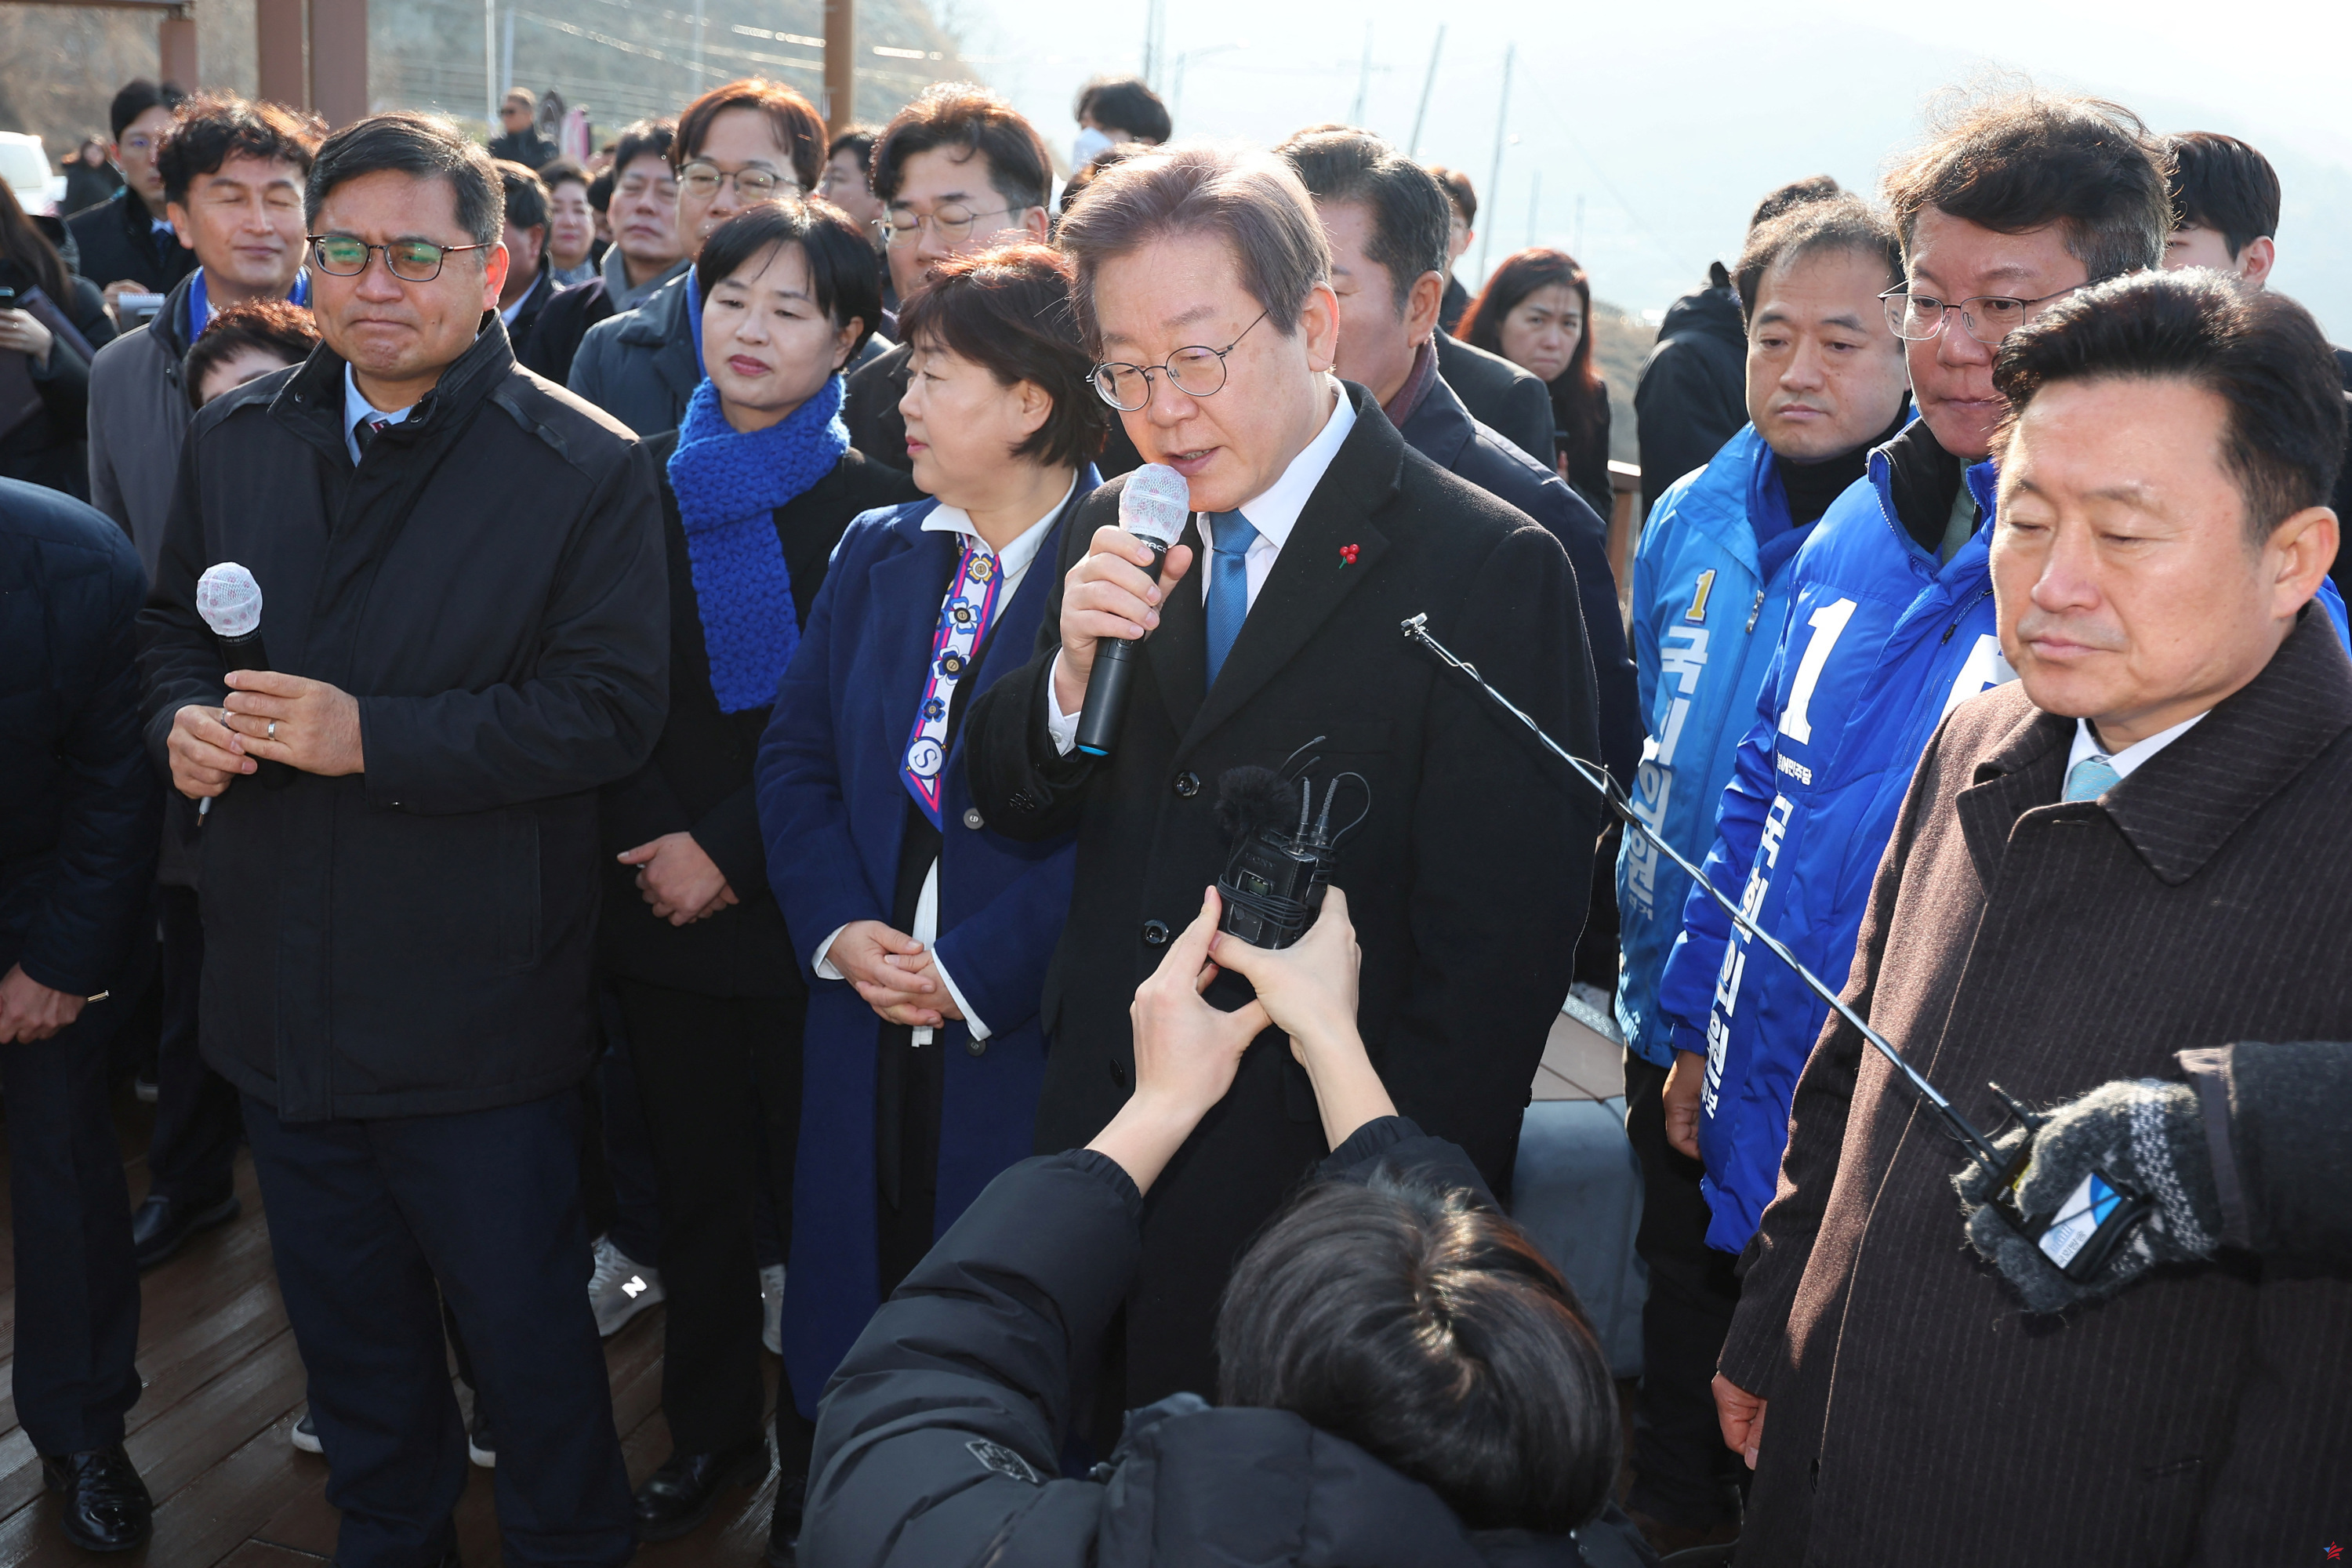 Corea del Sur: el líder de la oposición apuñalado escapó por poco de la muerte